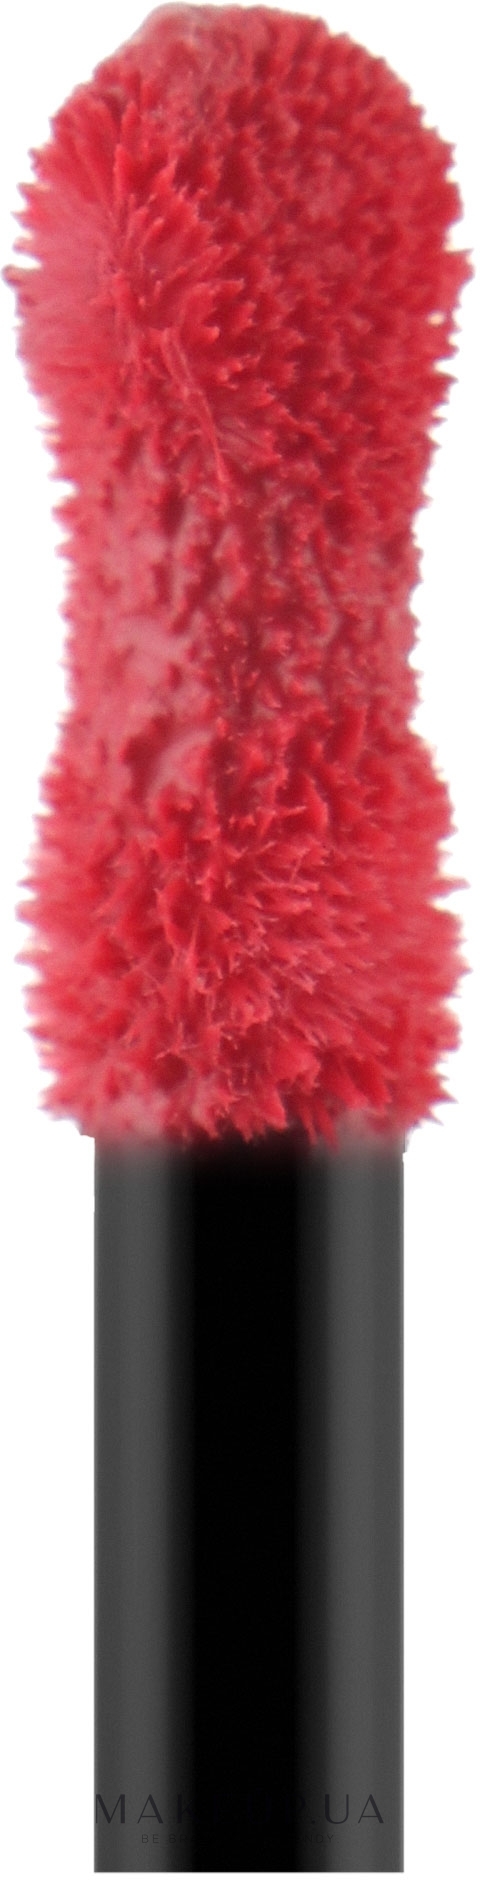 Жидкая помада для губ - Essence Colour Boost Vinylicious Liquid Lipstick — фото 05 - Lolilolipop